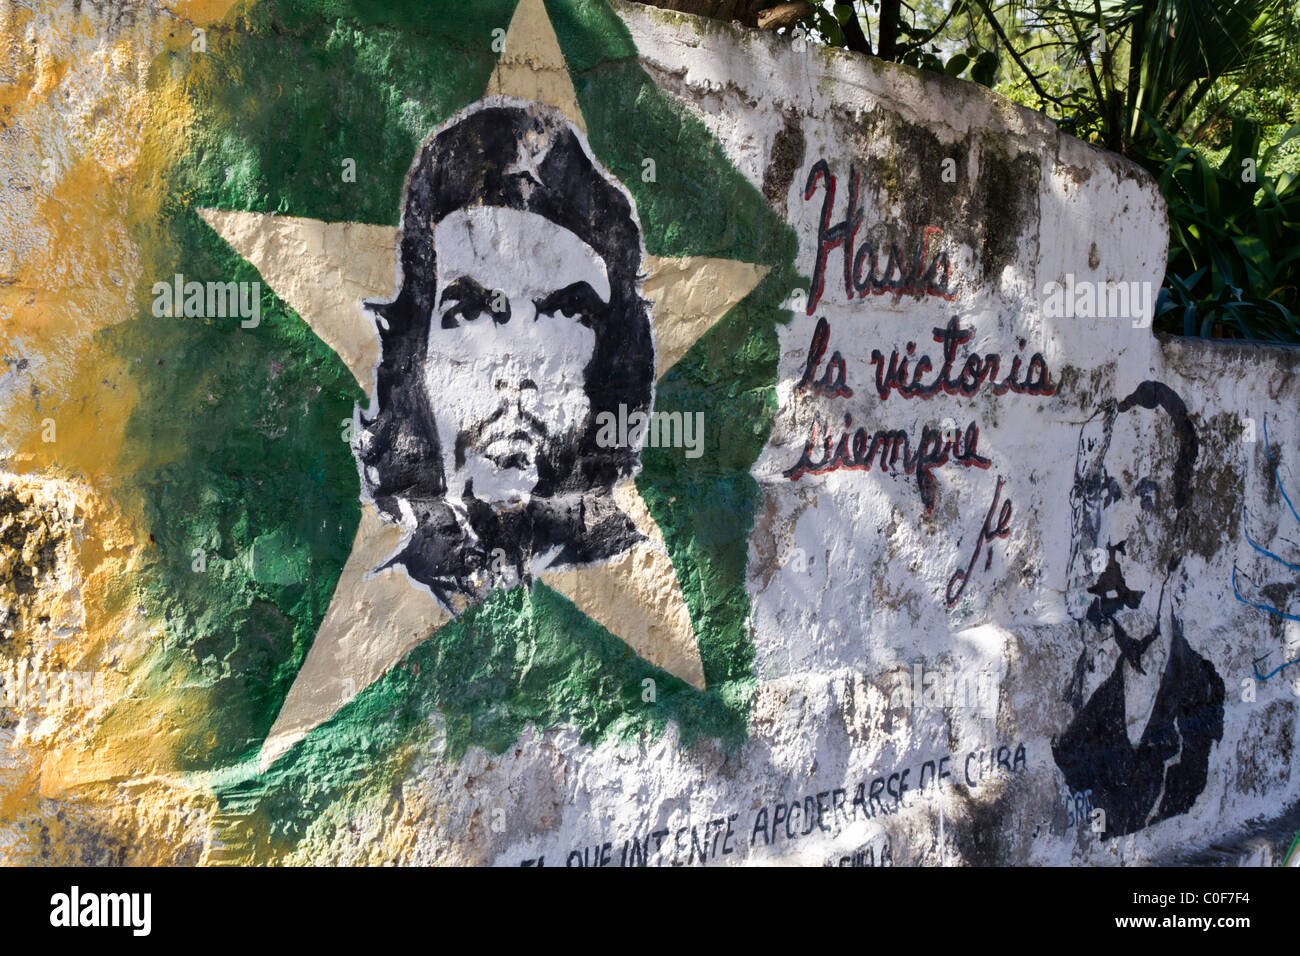 Che Guevara Wall Painting, Varadero Cuba Stock Photo